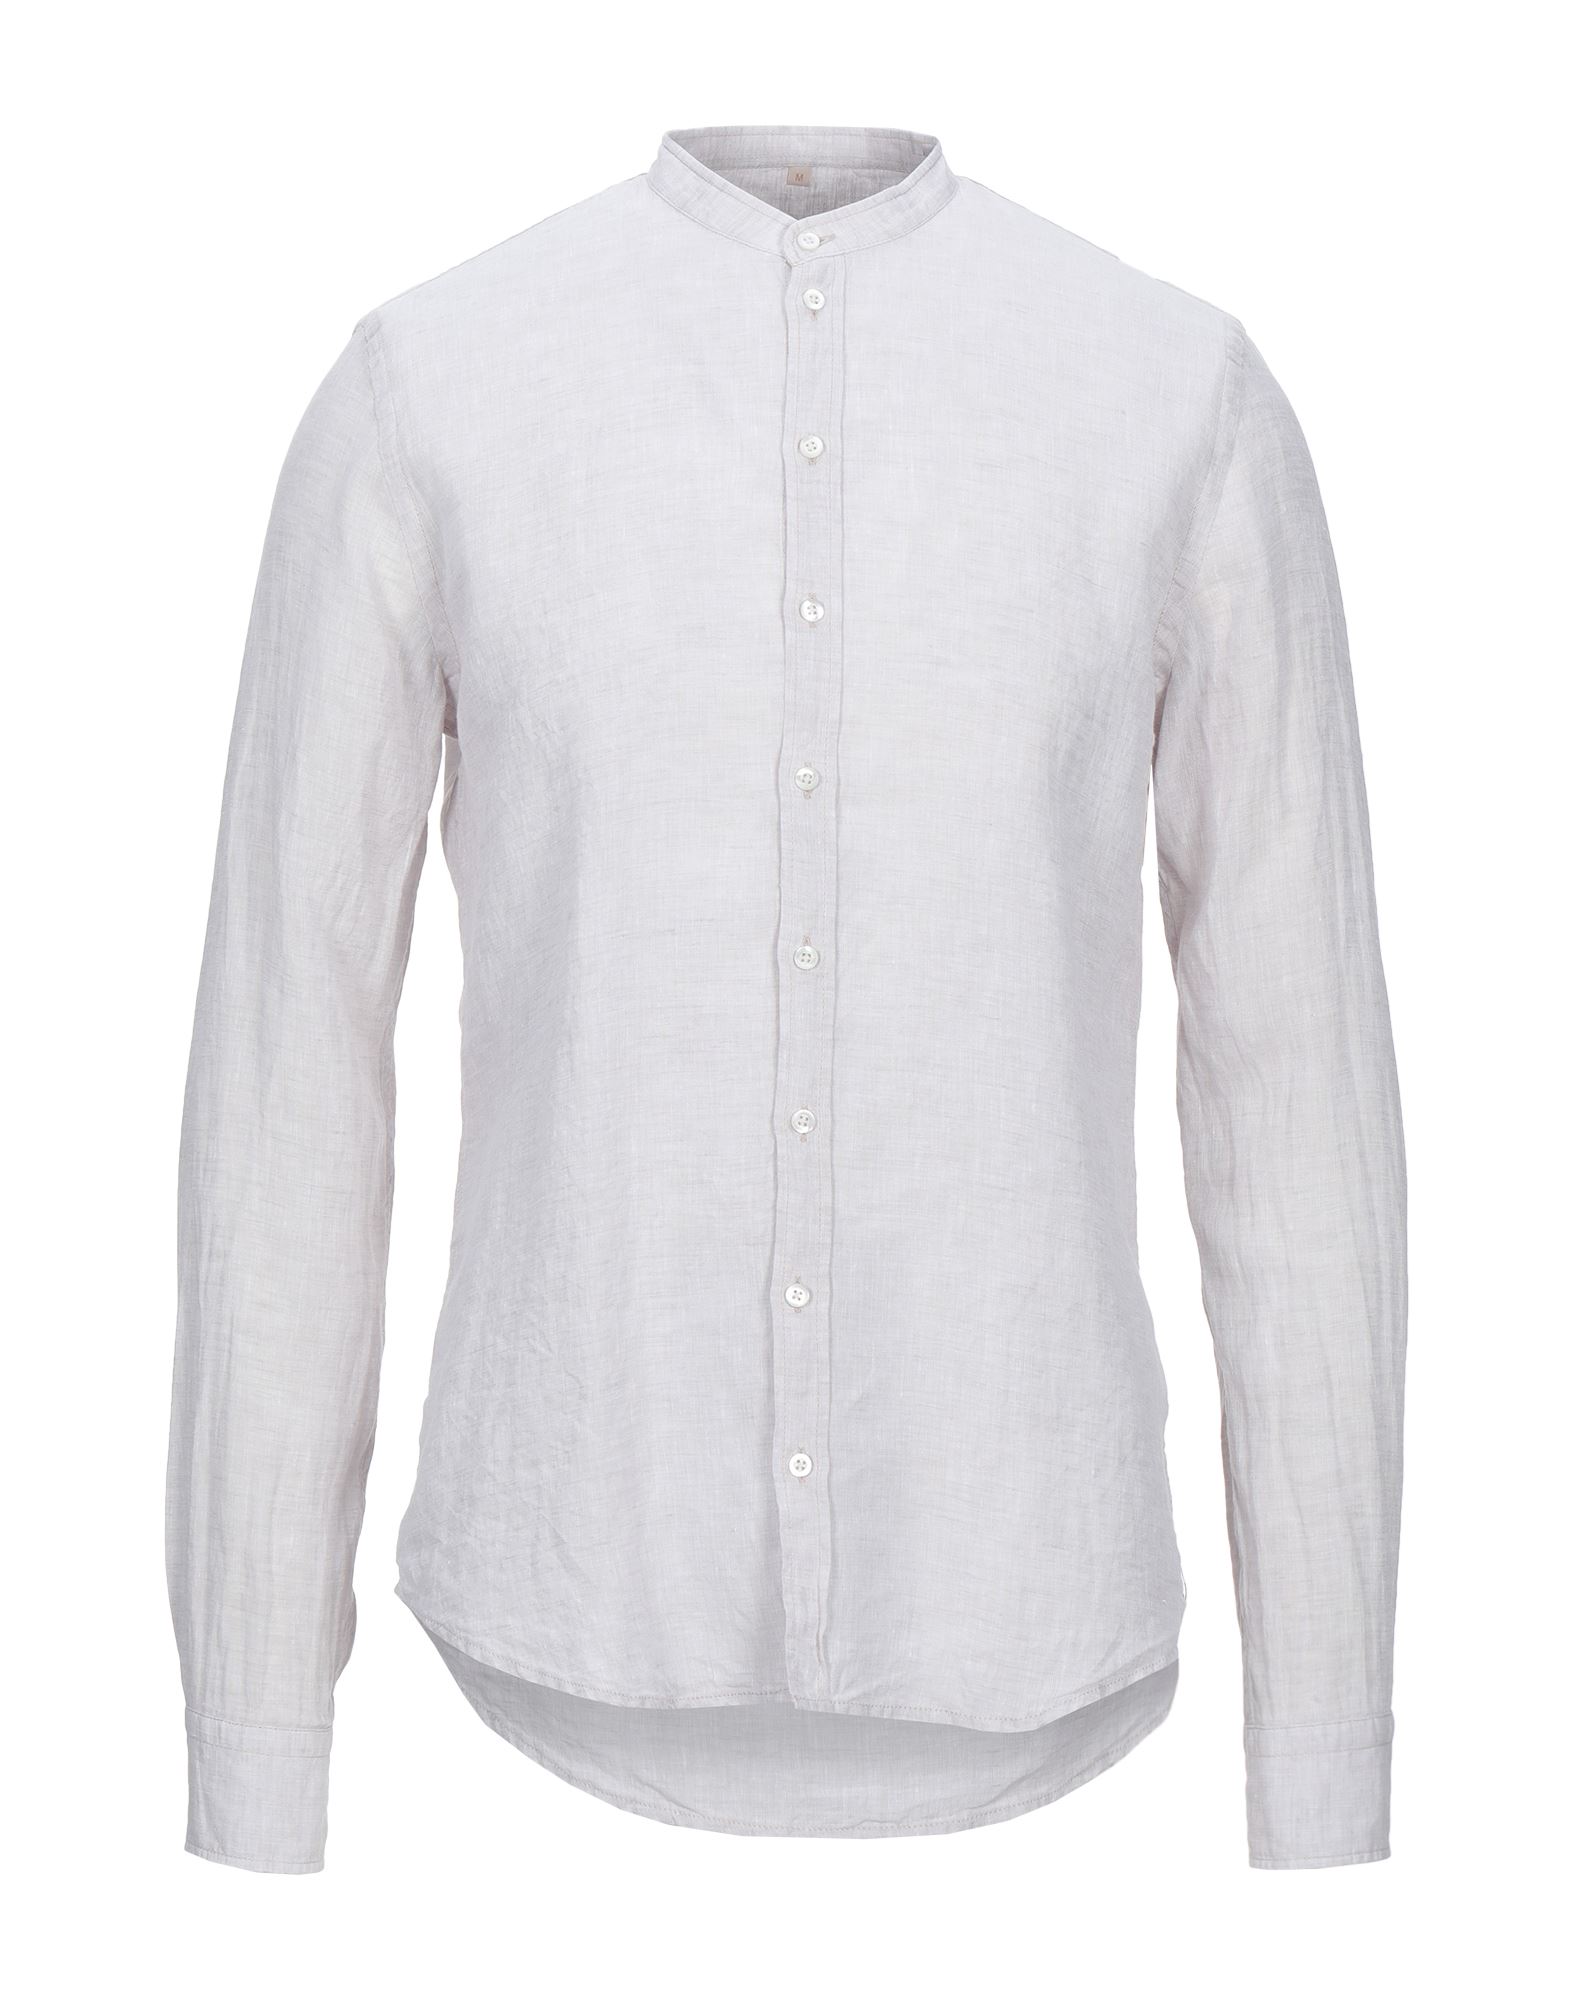 Q1 Man Shirt Light Grey Size M Linen